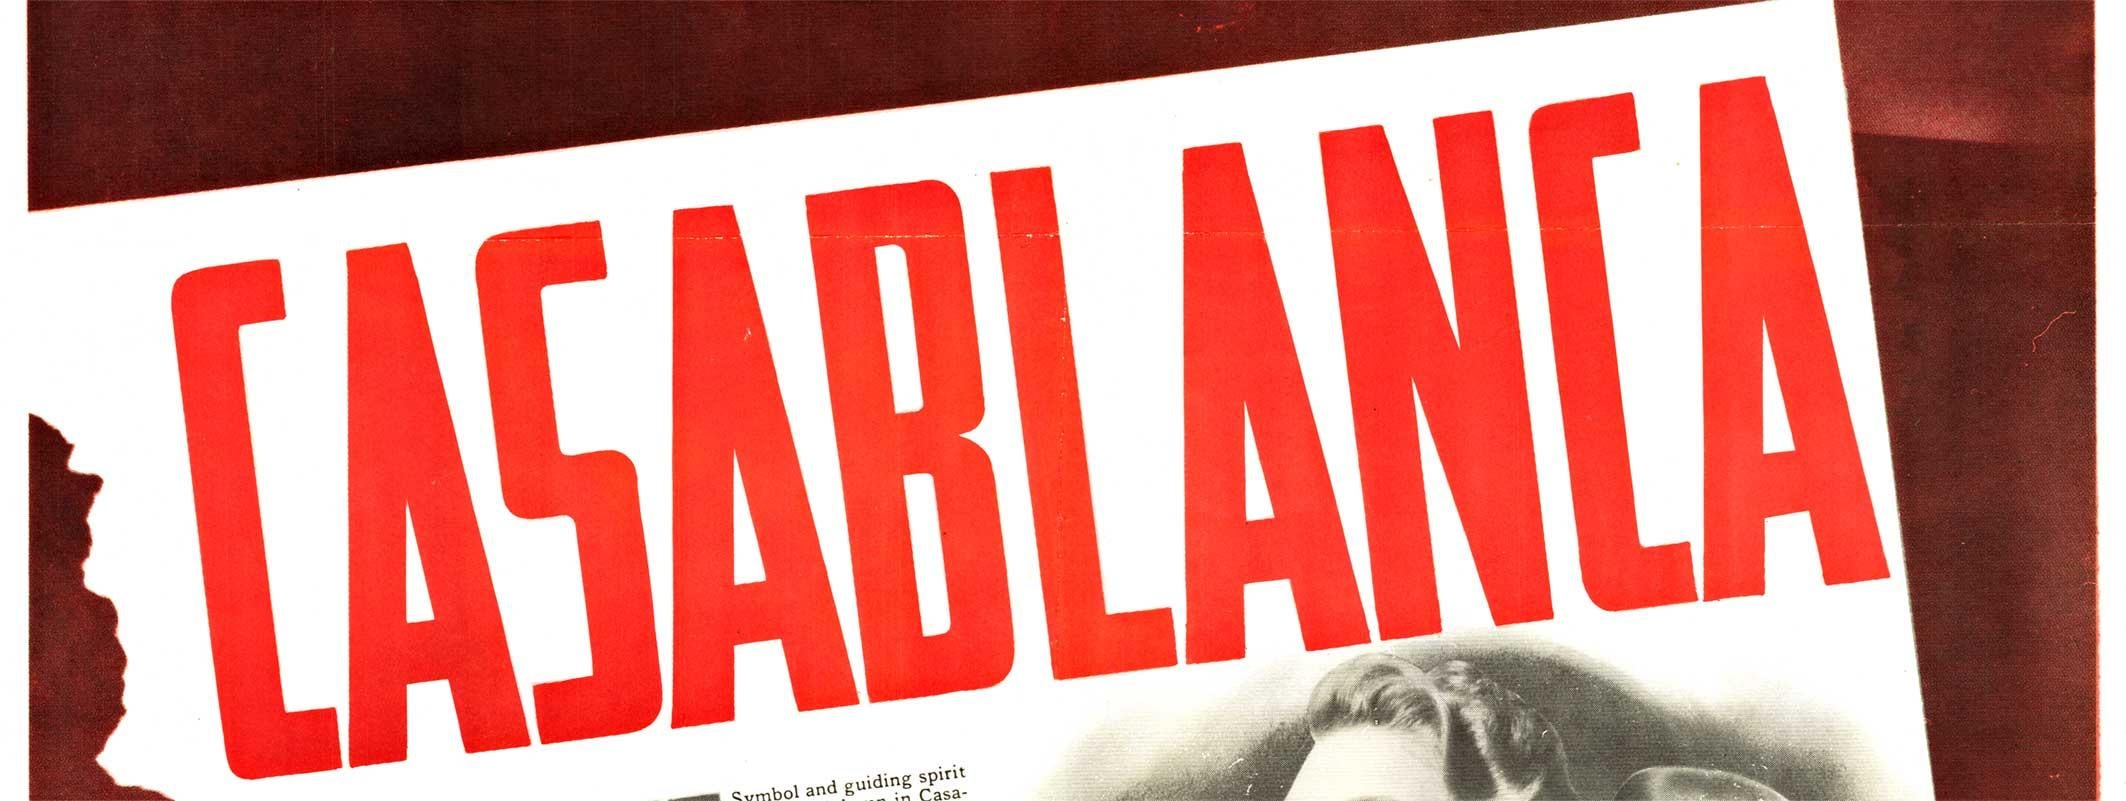 
Affiche originale du film CASABLANCA de 1942.   Dos en lin d'archives en très bon état, prêt à être encadré.    Les marques de pliage d'origine ont été retouchées et restaurées.    Il s'agit d'un authentique numéro de Casablanca de 1942 mis en